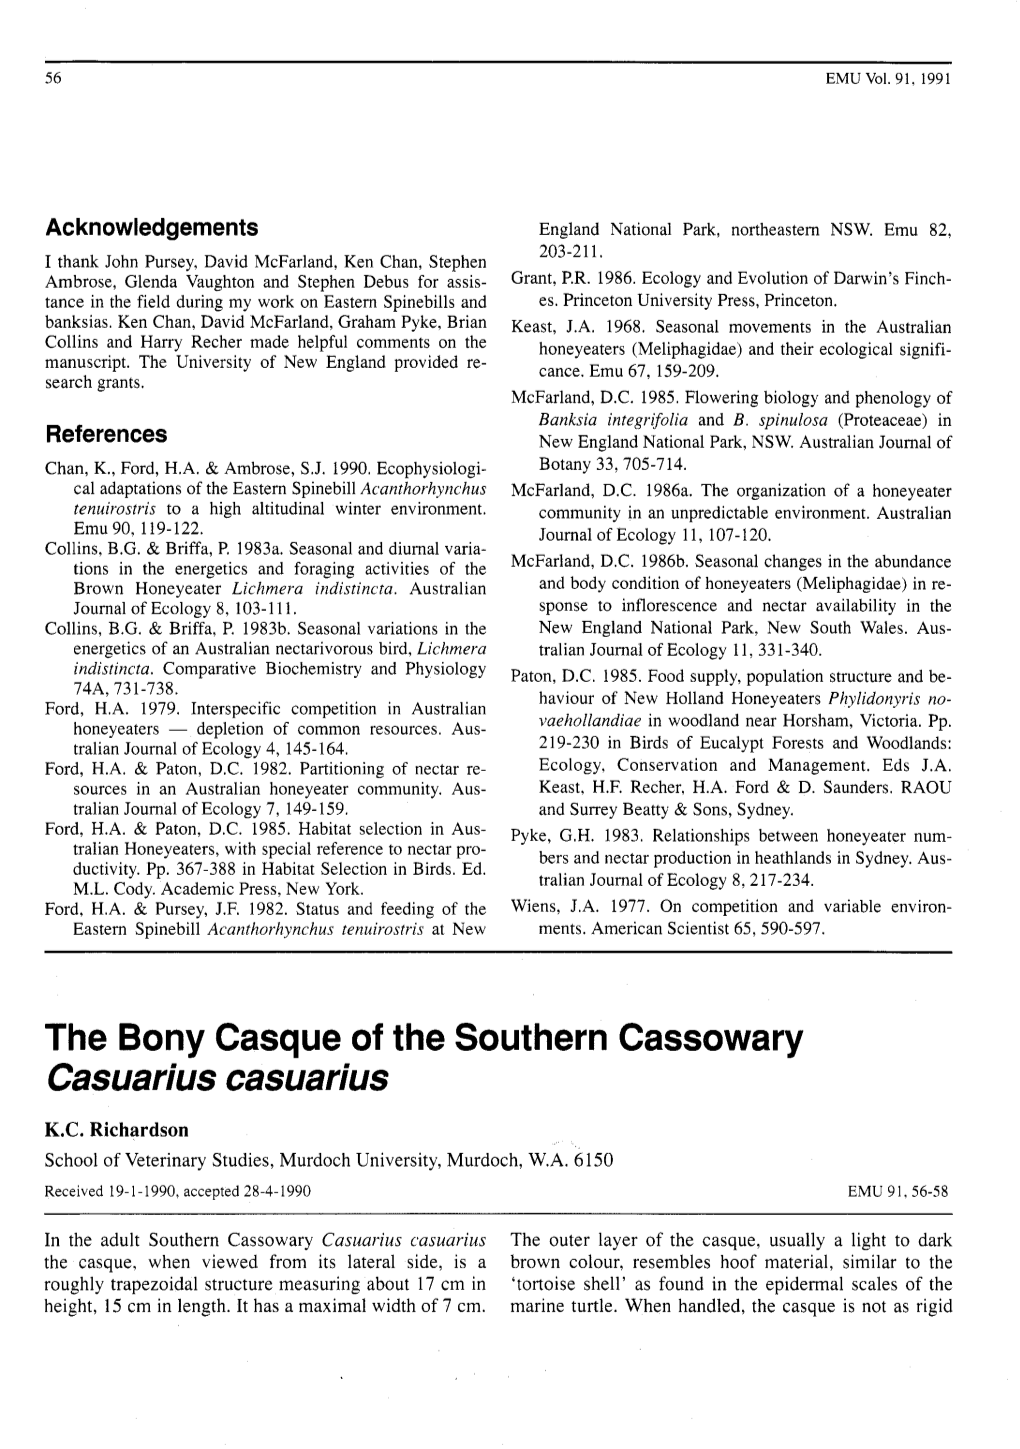 The Bony Casque of the Southern Cassowary Casuarius Casuarius K.C